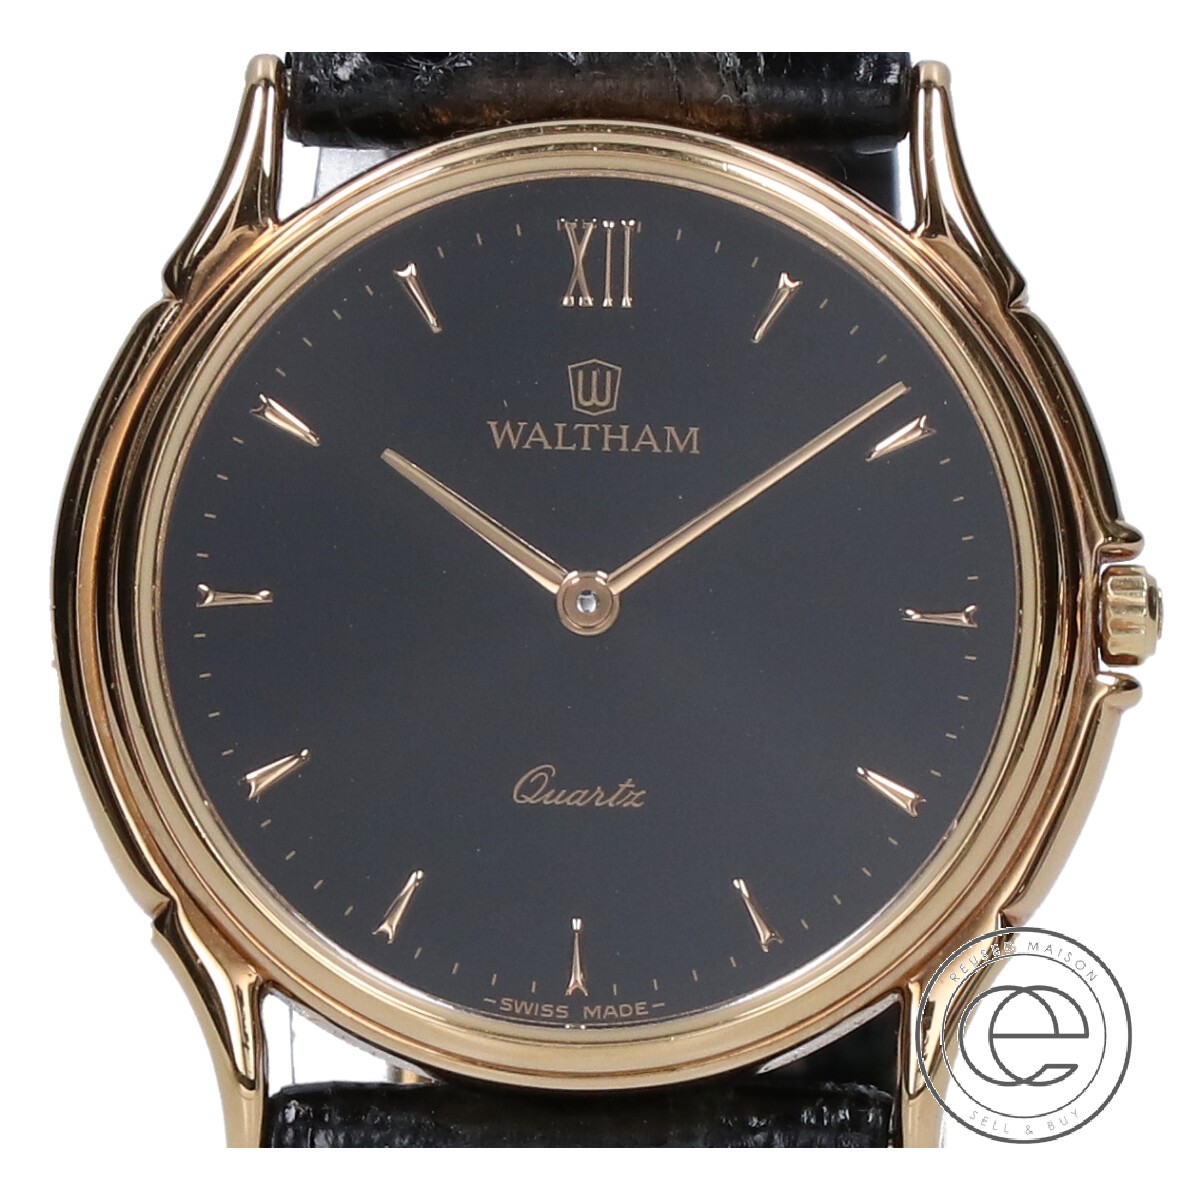 ウォルサムの26207 L400425 レザーベルト クオーツ腕時計の買取実績です。